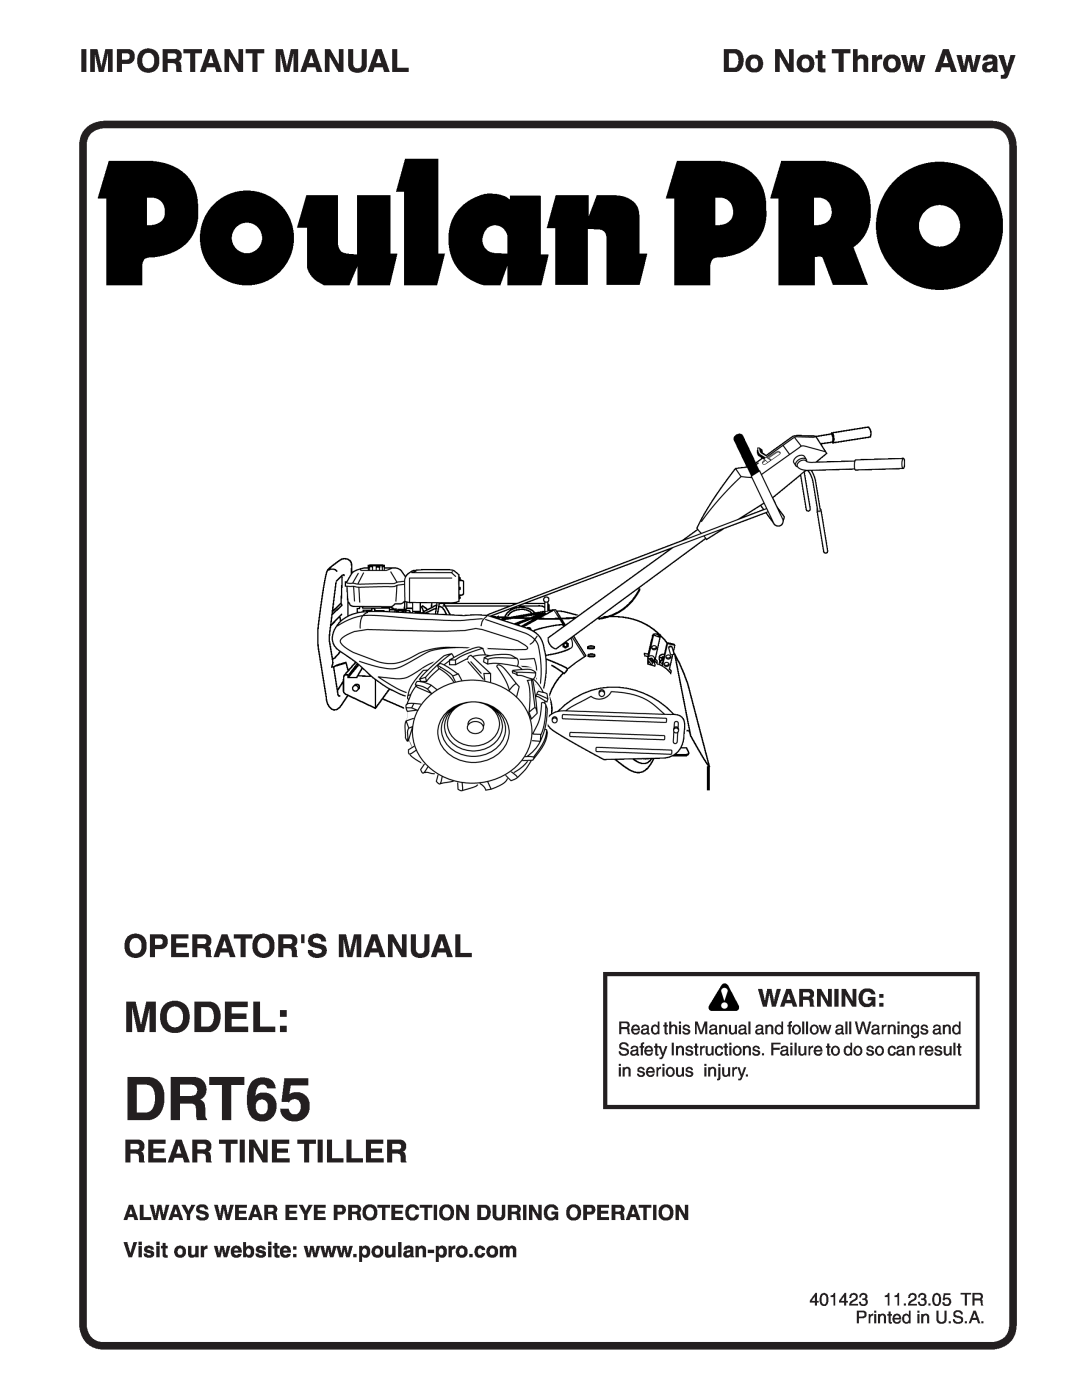 Poulan 96092000500, 401423 manual Model, Important Manual, Operators Manual, Rear Tine Tiller, DRT65, Do Not Throw Away 